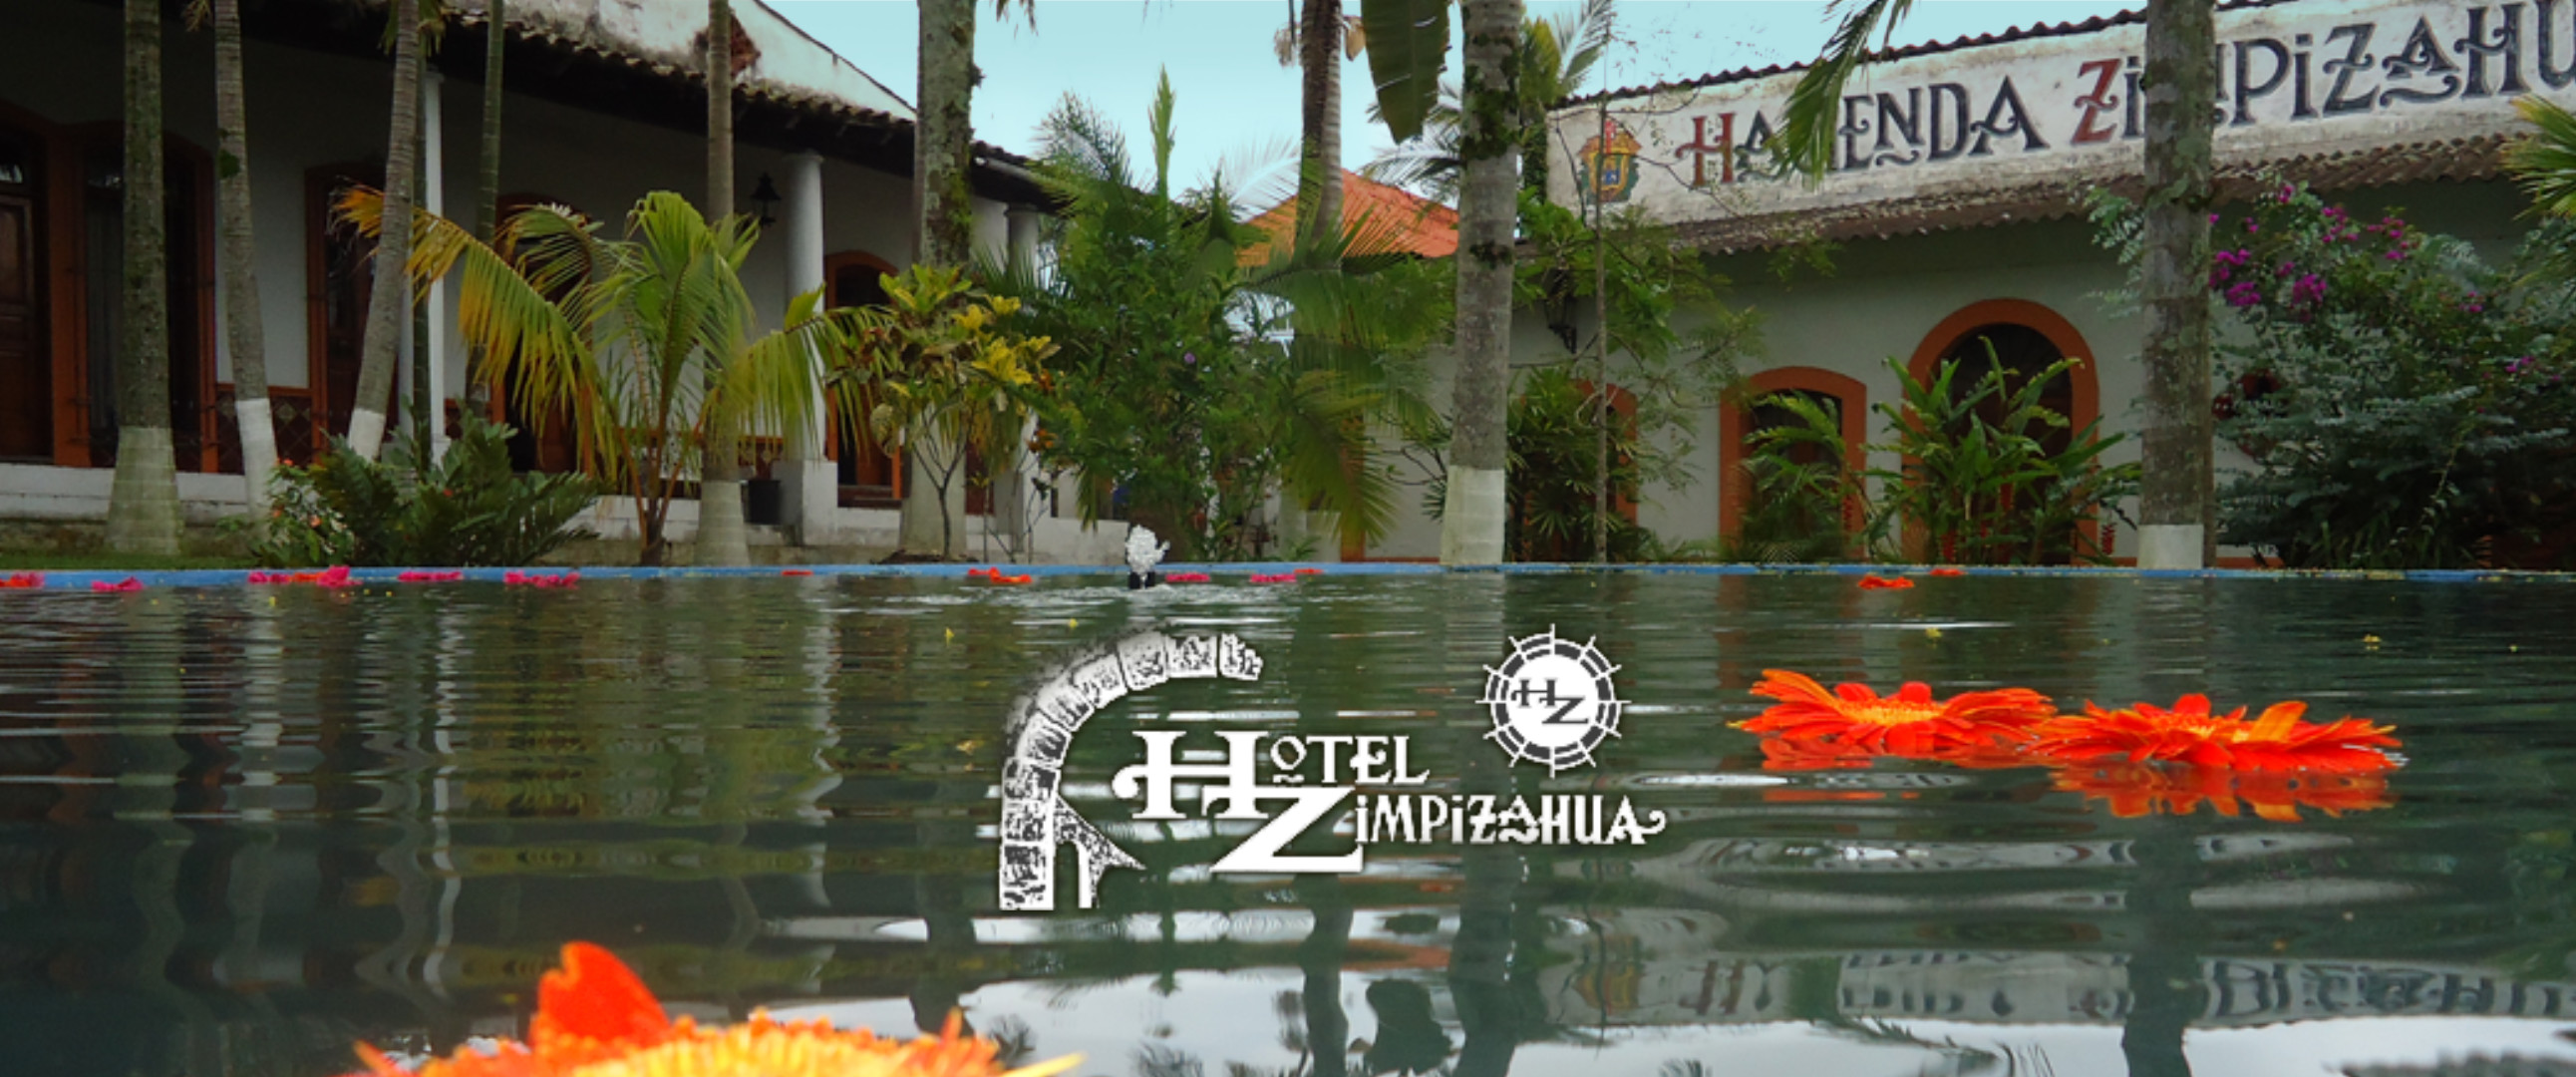 Fotografía de la hacienda zimpizahua